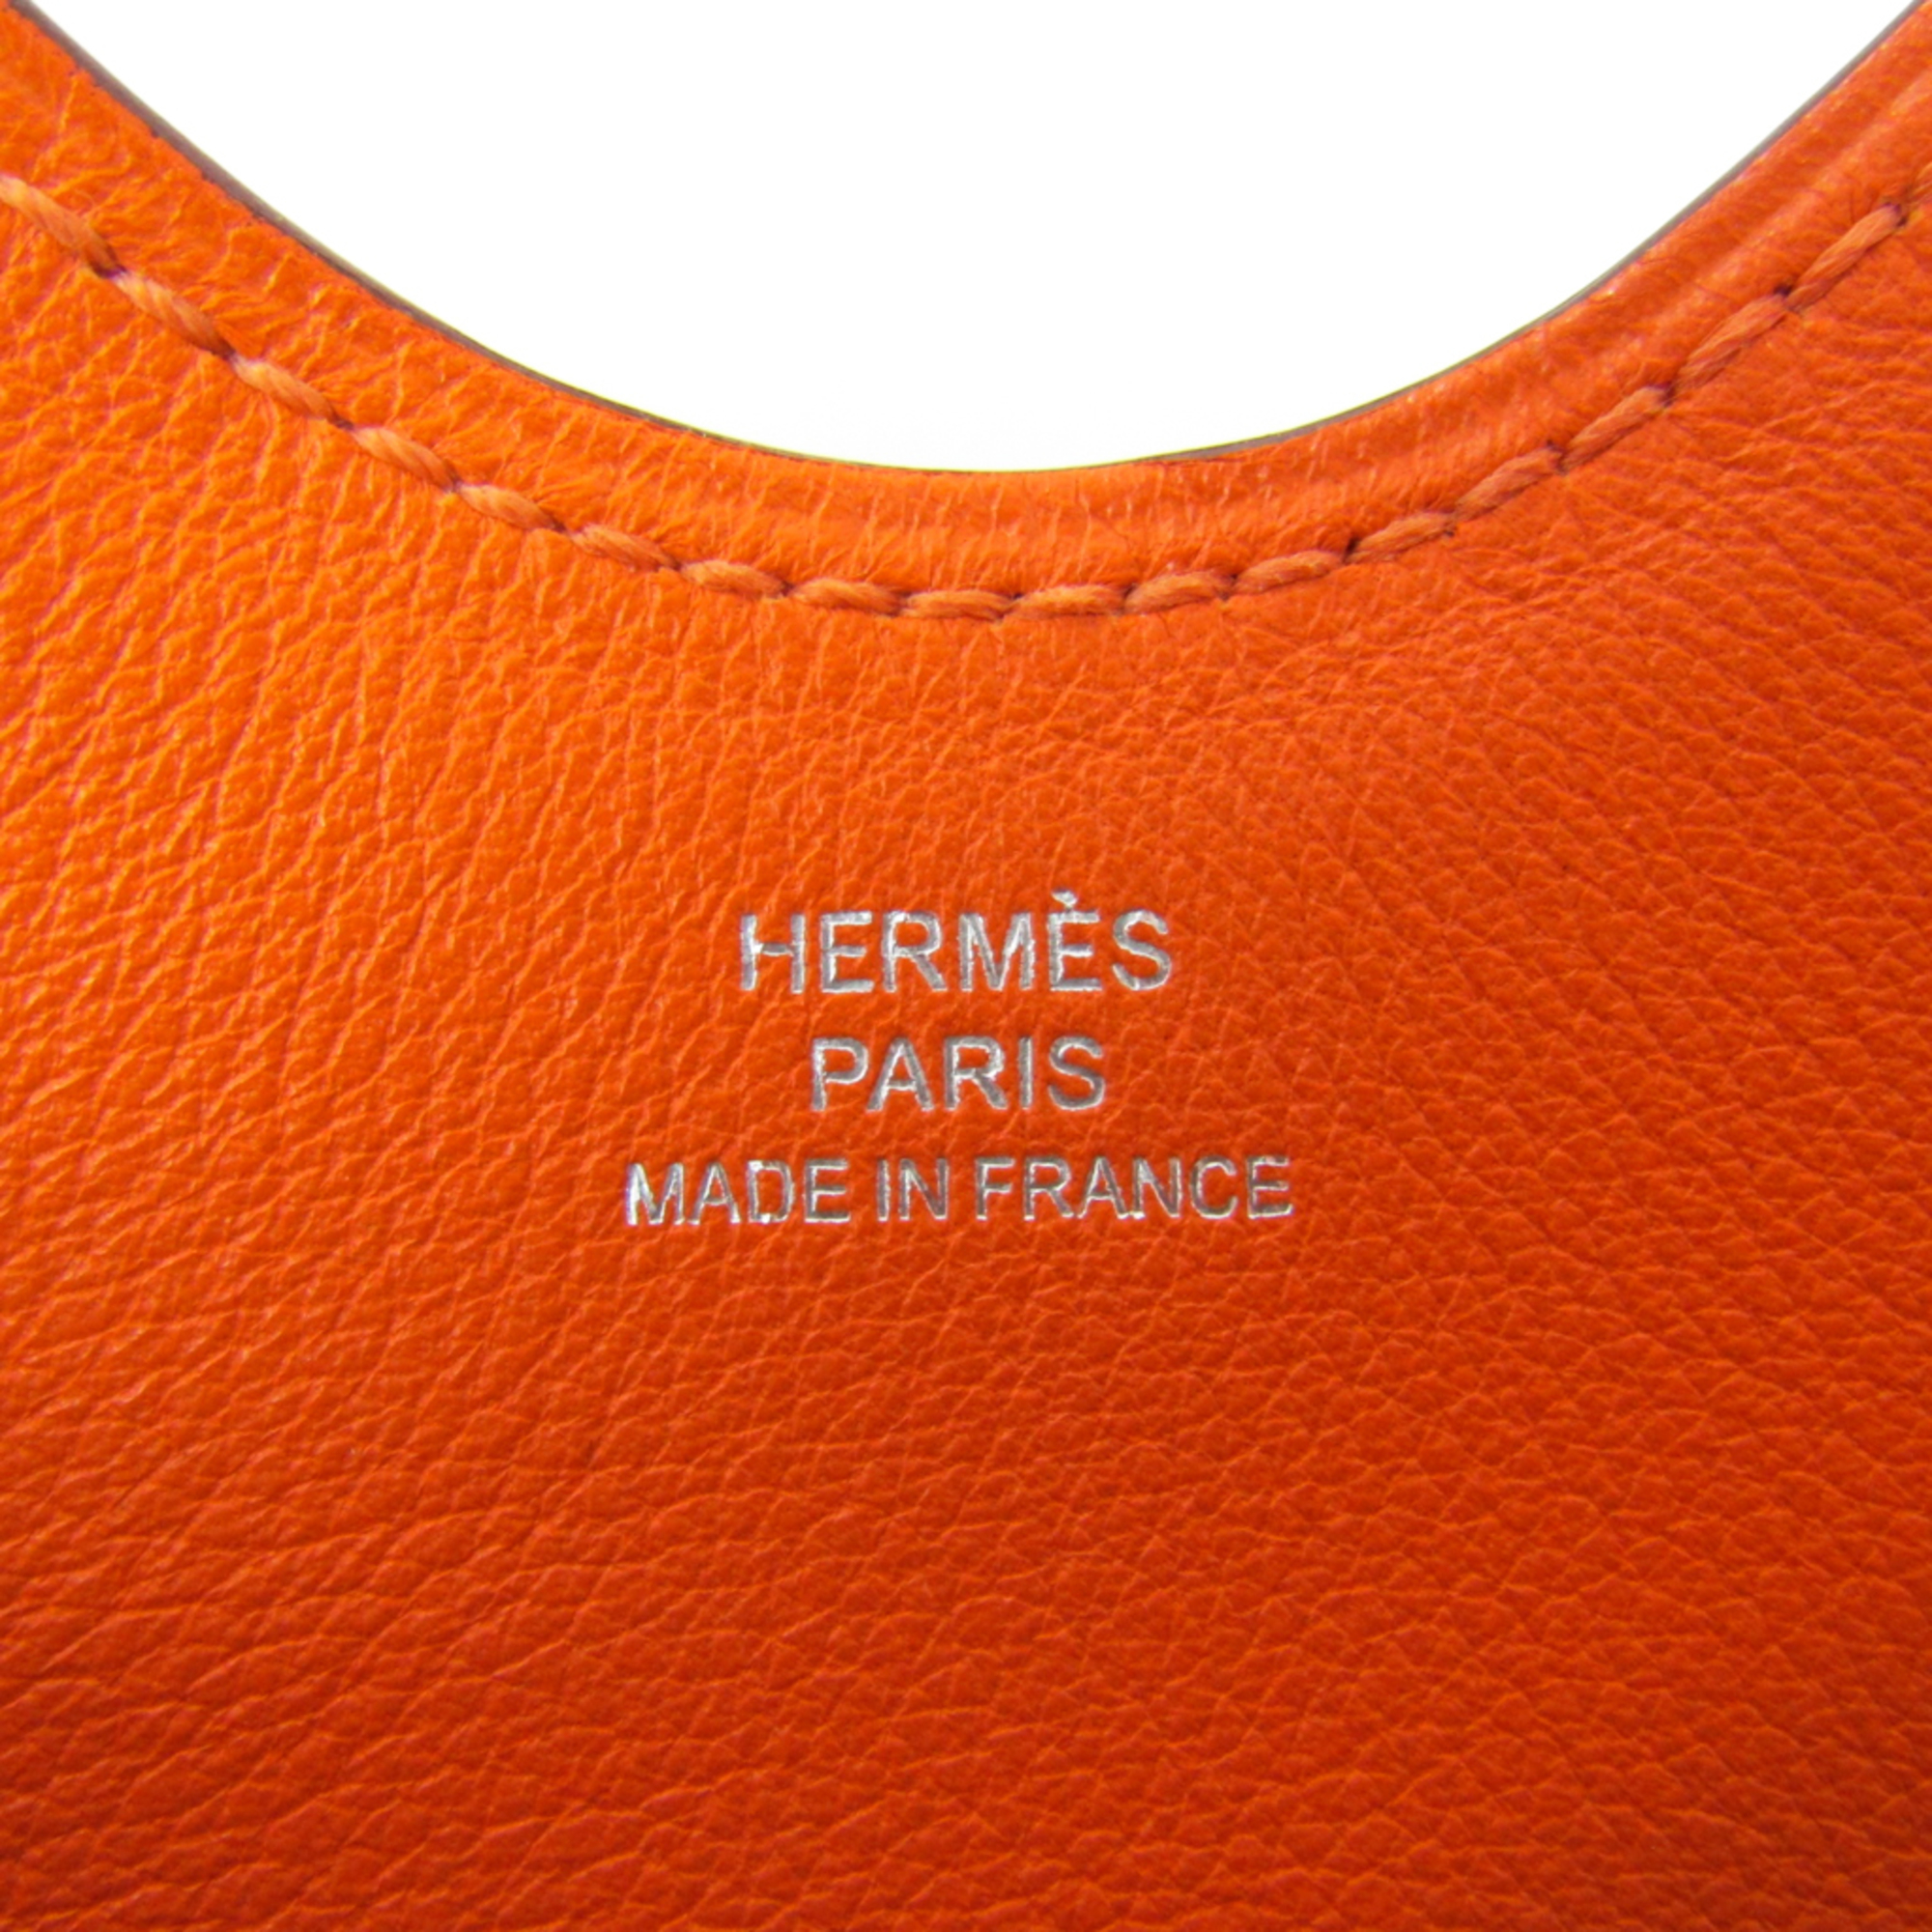 Hermes Case For IPad Orange